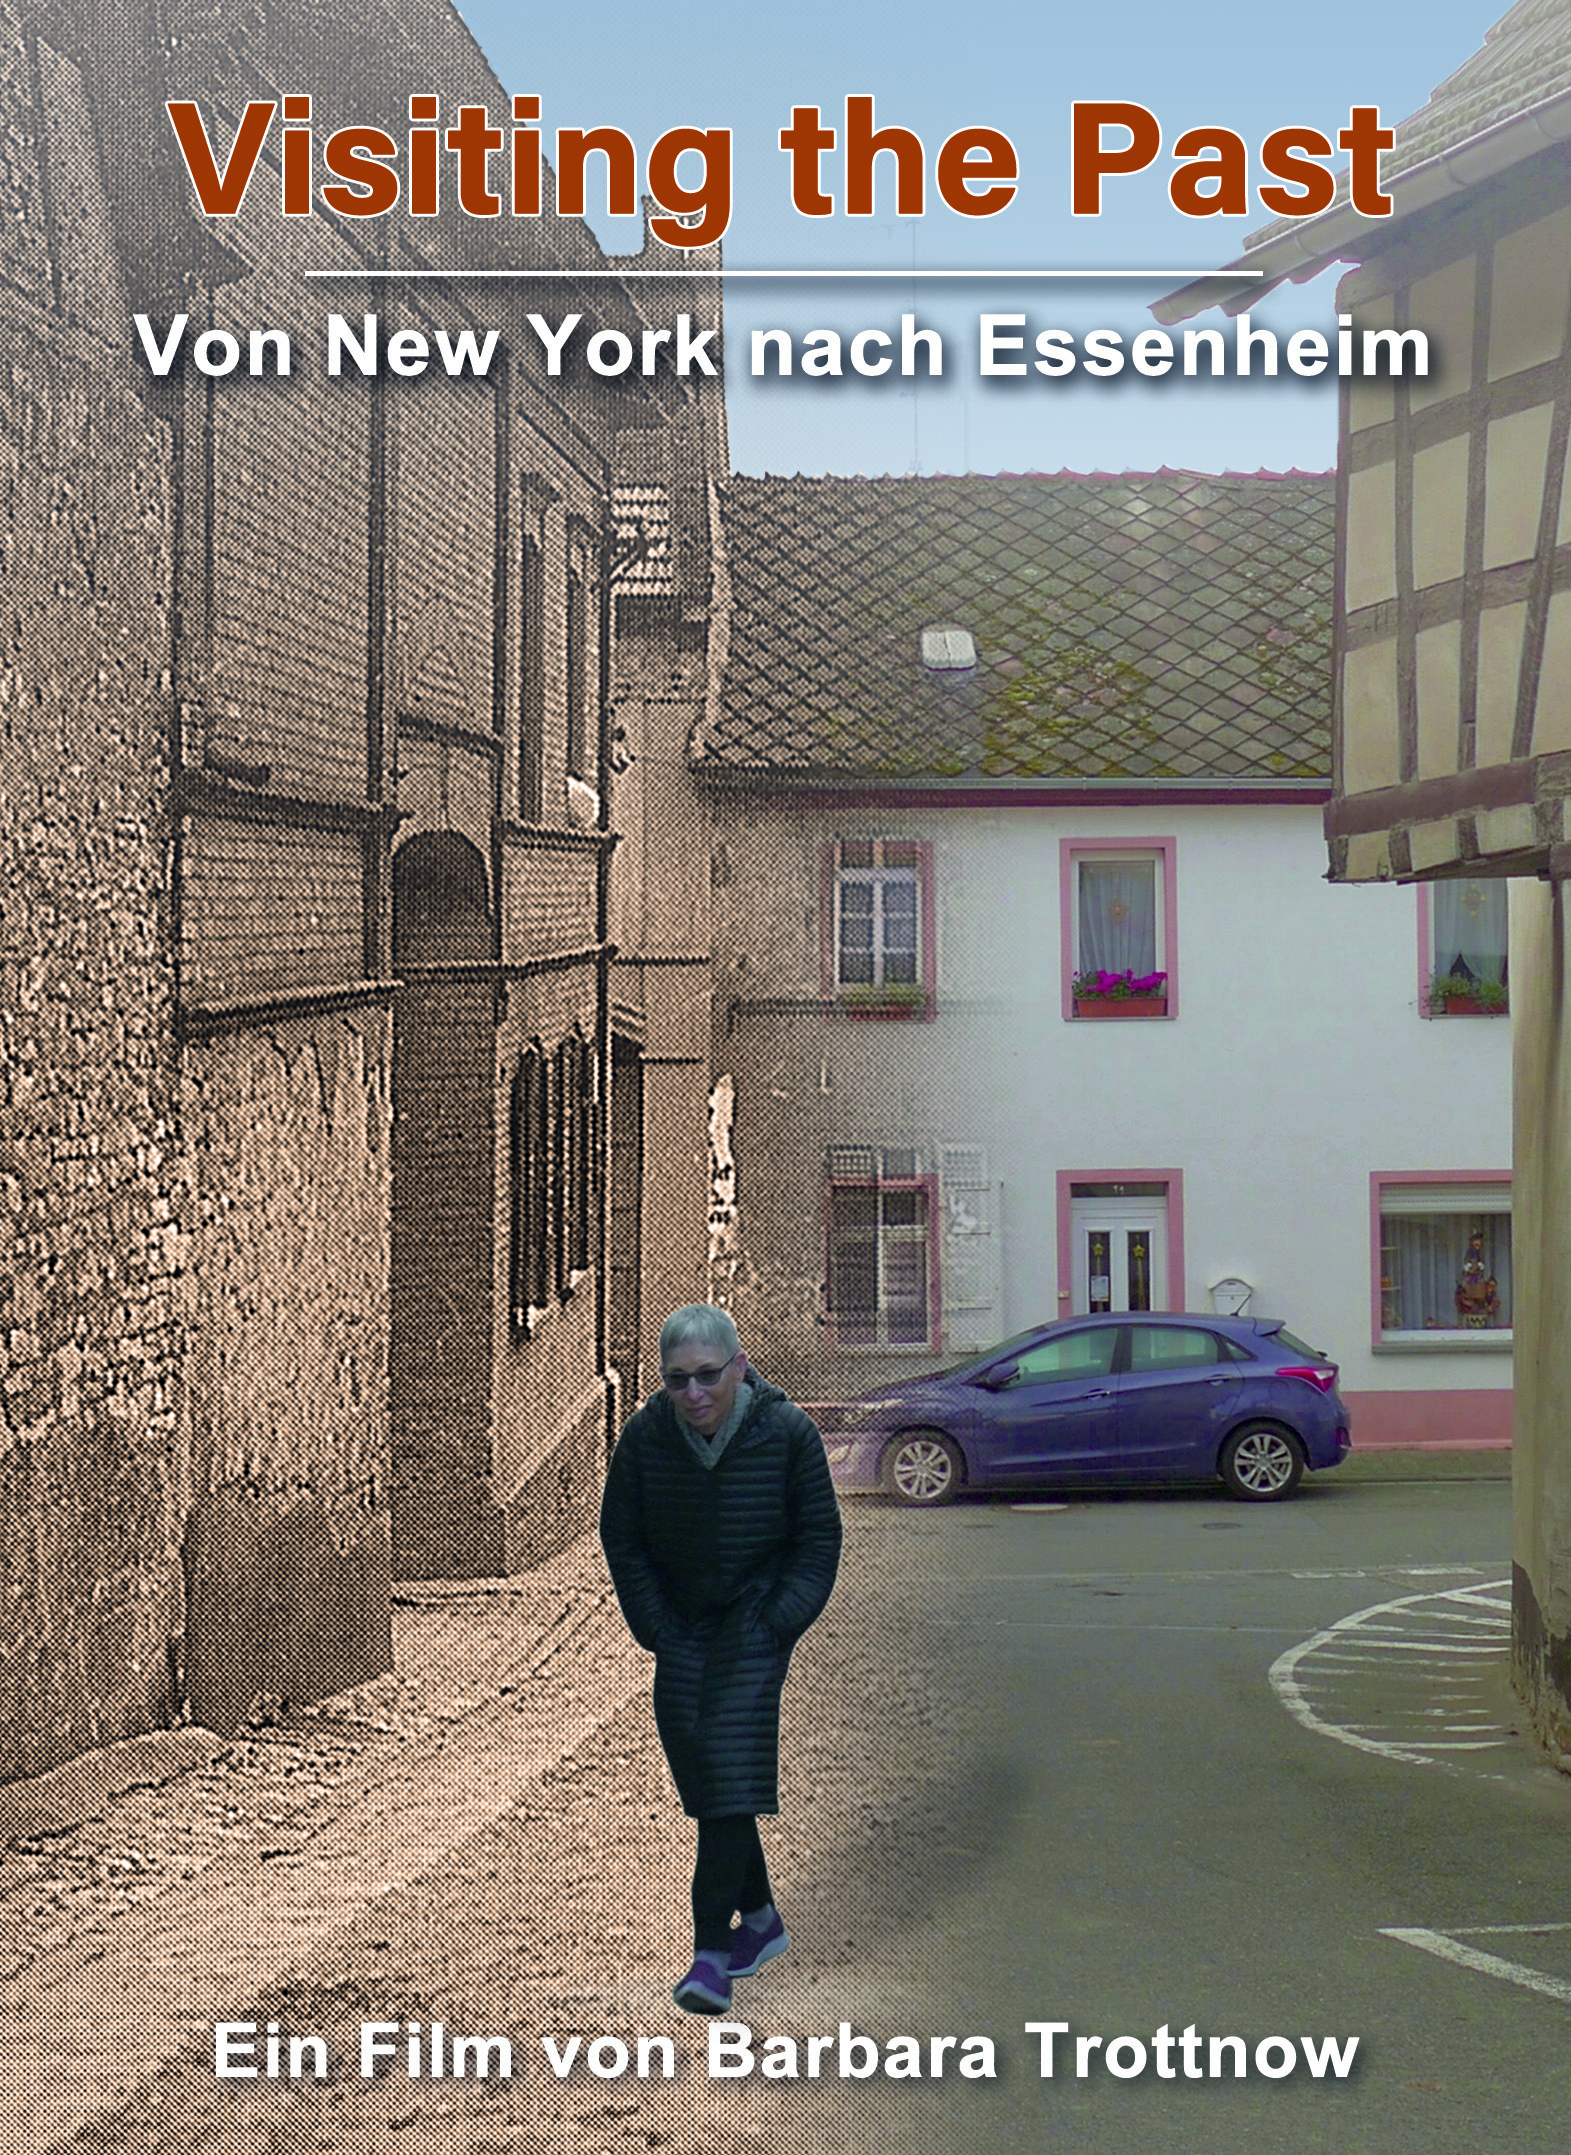 Visiting the past – Von New York nach Essenheim